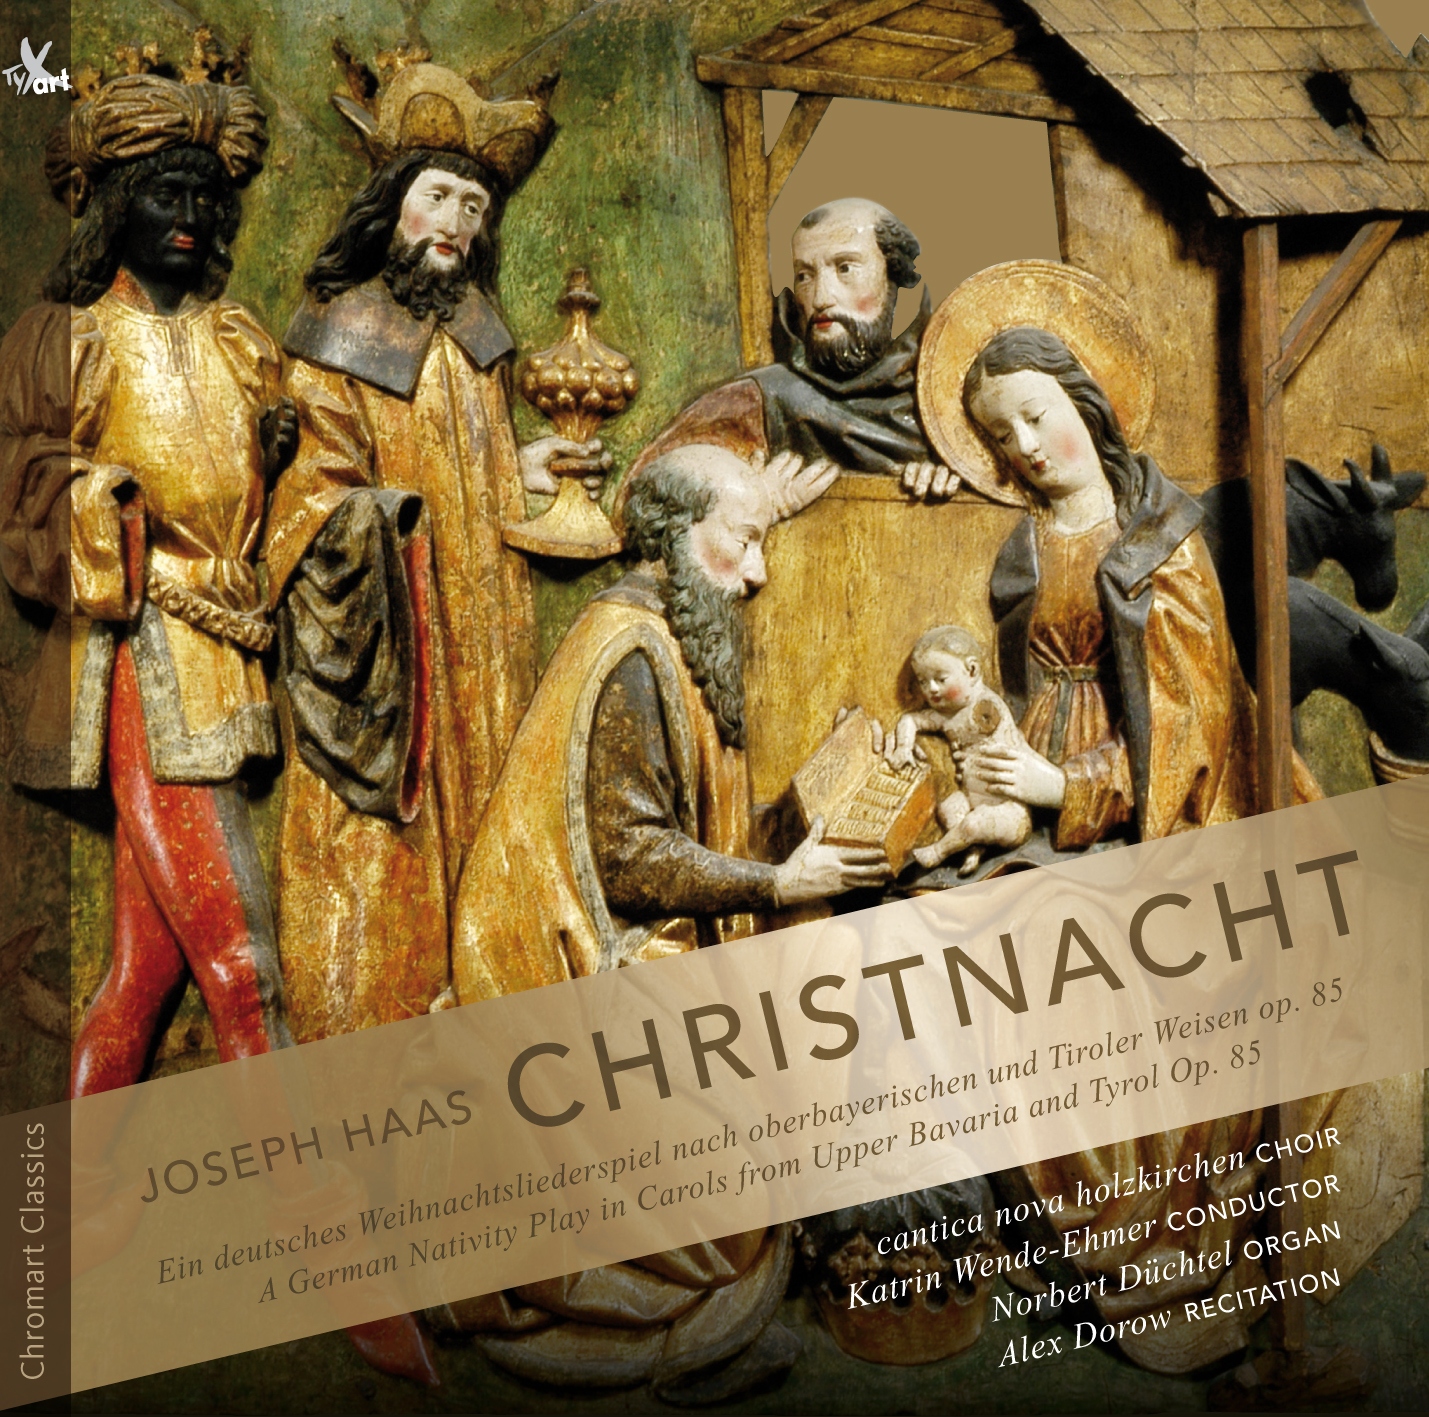 Joseph Haas: Christnacht - Ein Weihnachtsliederspiel